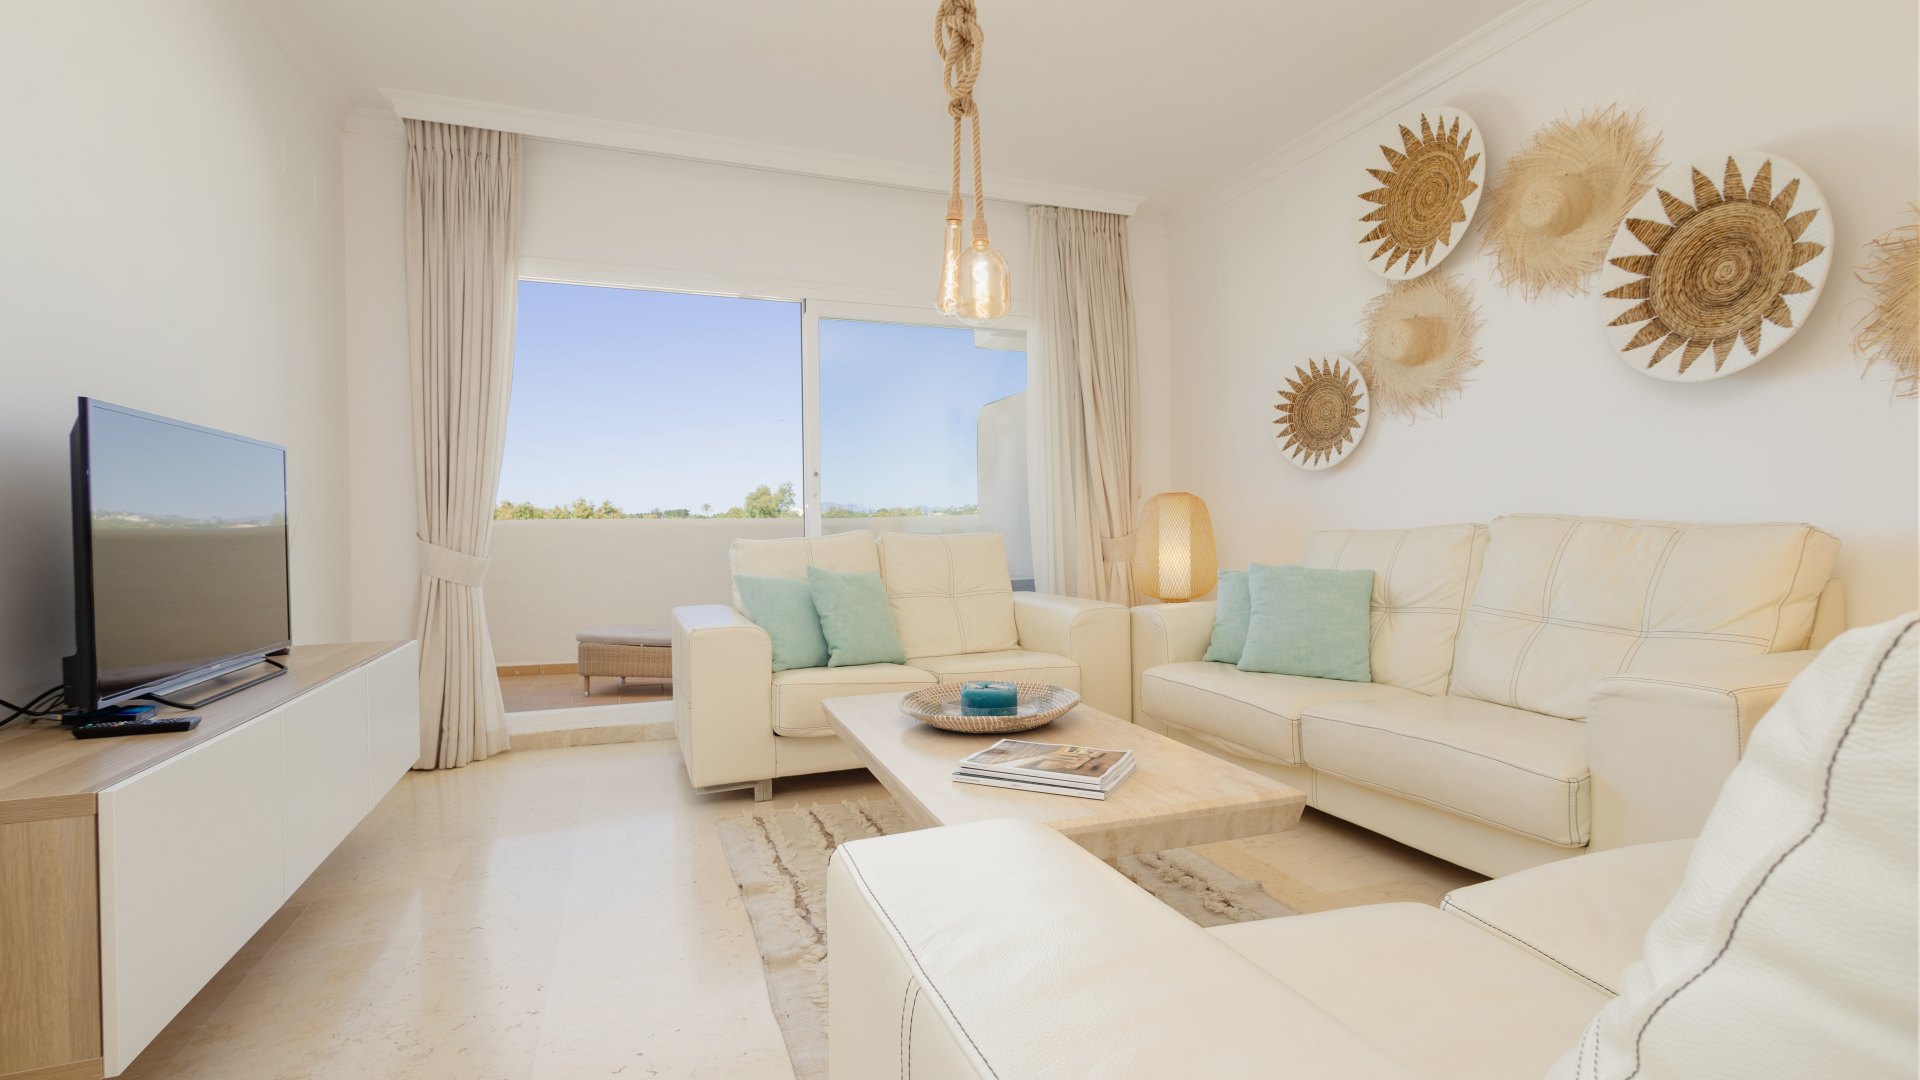 Stylish 3 bedroom flat with sea views in Elviria Marbella